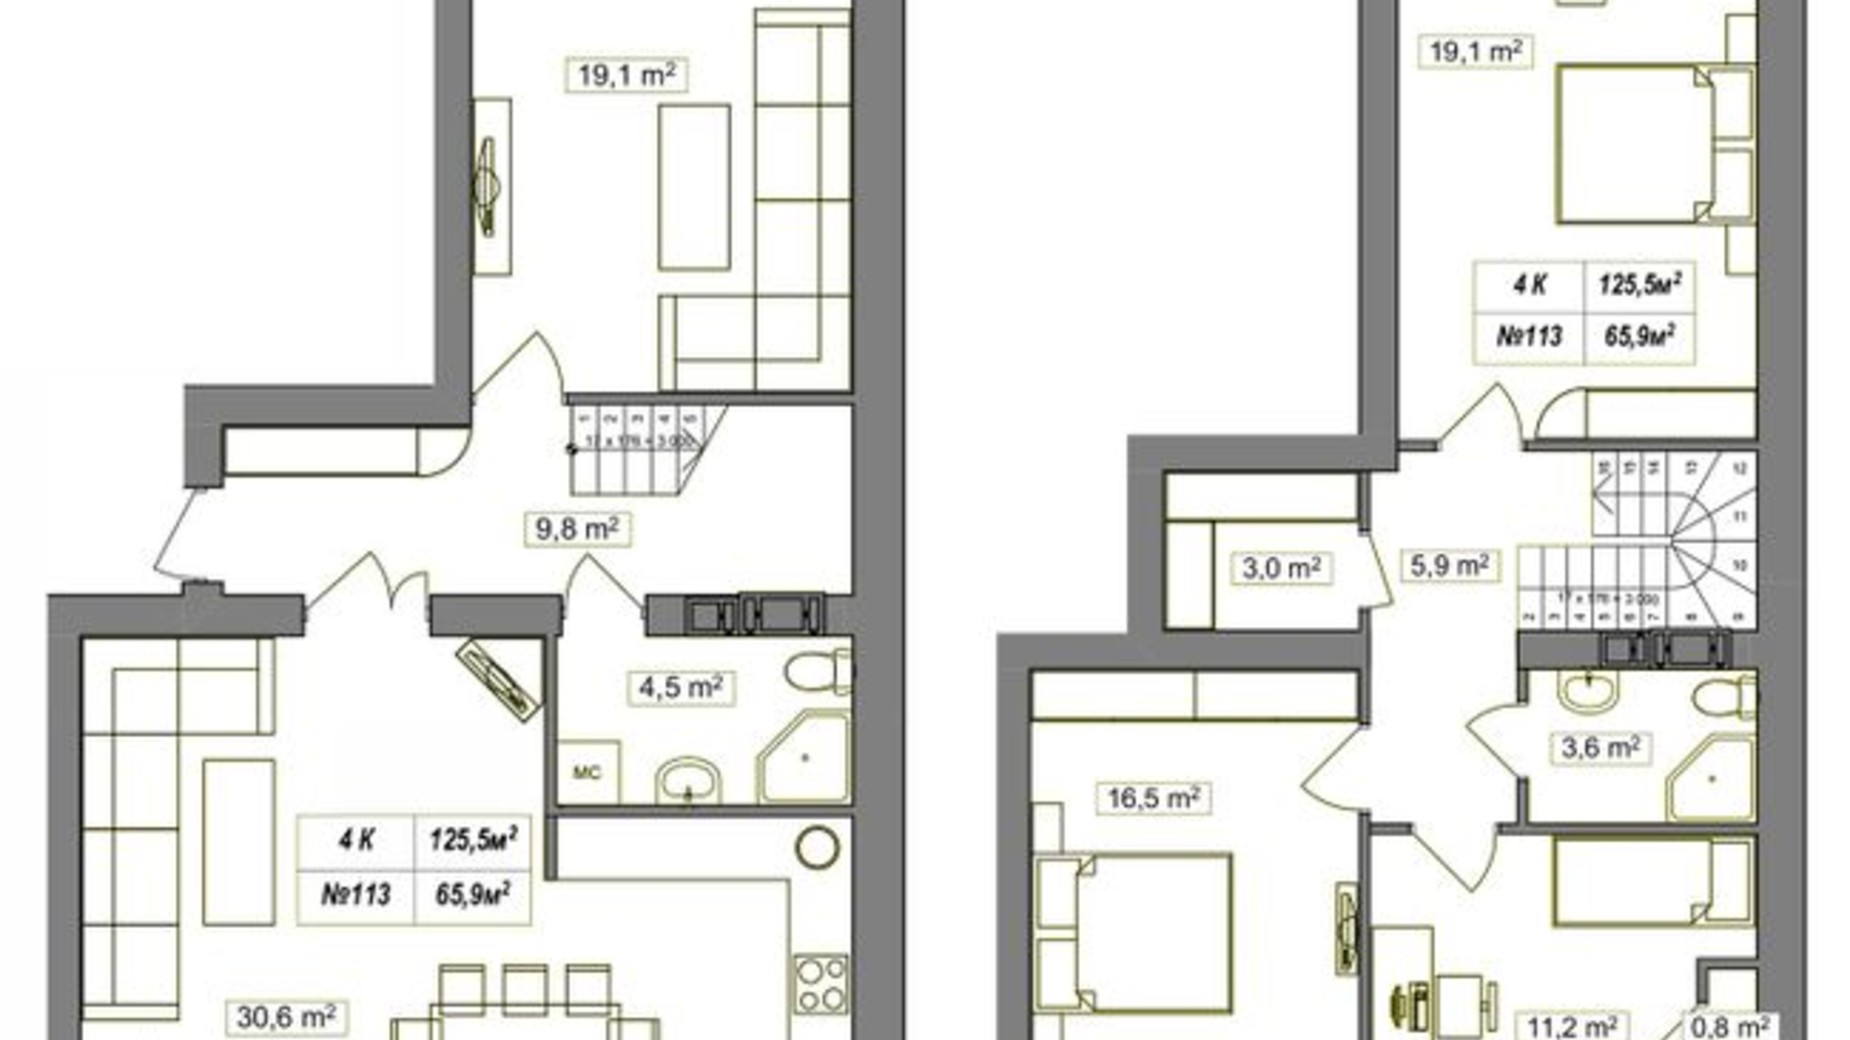 Планировка много­уровневой квартиры в ЖК Гудвил 125.5 м², фото 374368